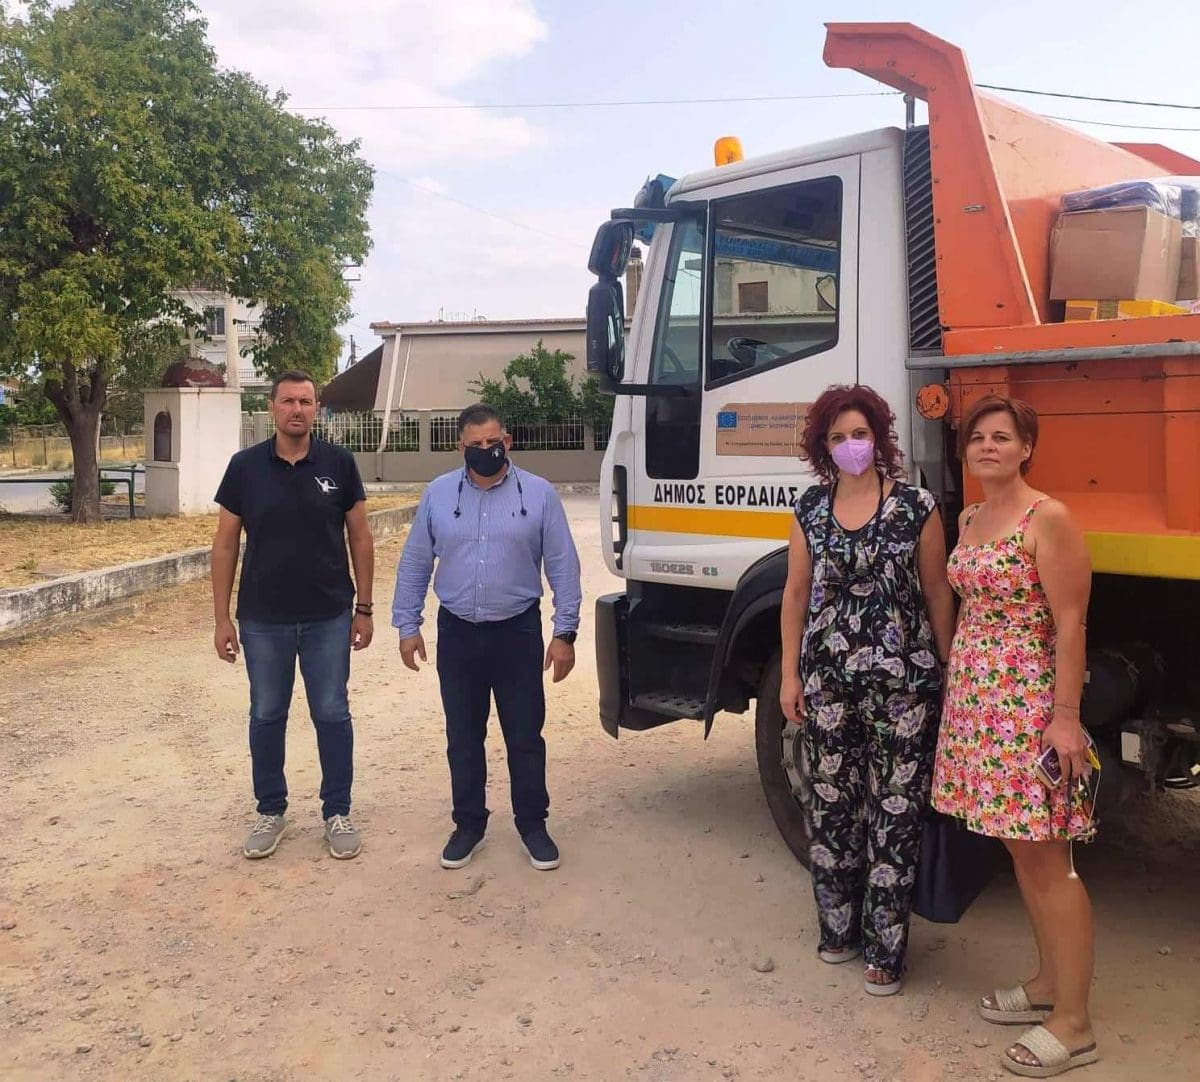 Αποστολή βοήθειας του Δήμου Εορδαίας προς το Δήμο Ιστιαίας-Αιδηψού στη Βόρεια Εύβοια.